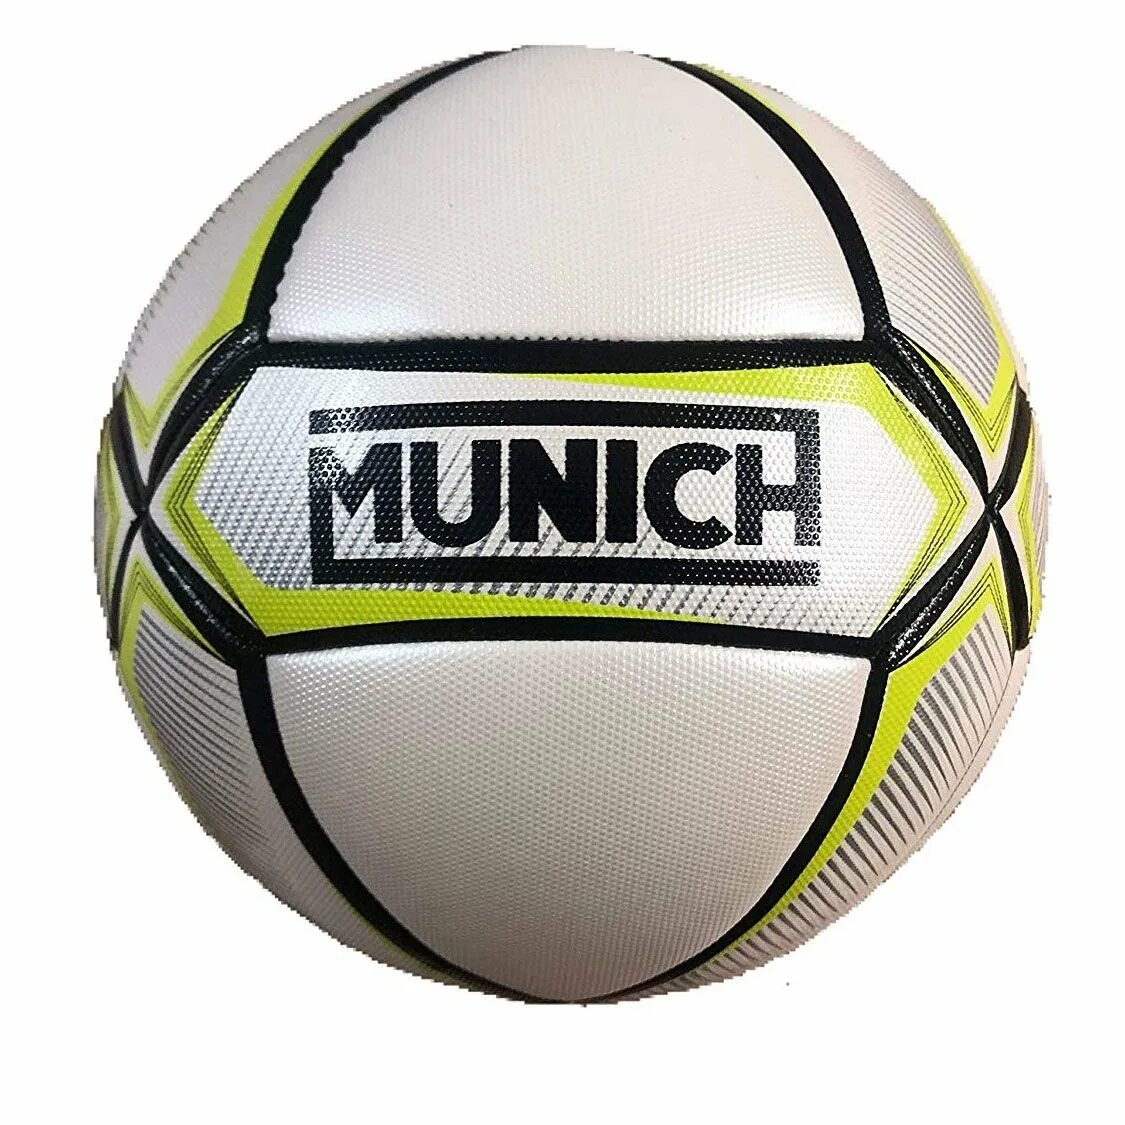 Мяч для футзала Munich Futsal Prisma. KELME Futsal мяч. Мяч Minuch мини футбольный. Мяч футбольный Munich Supra n5. Какой мяч в мини футболе